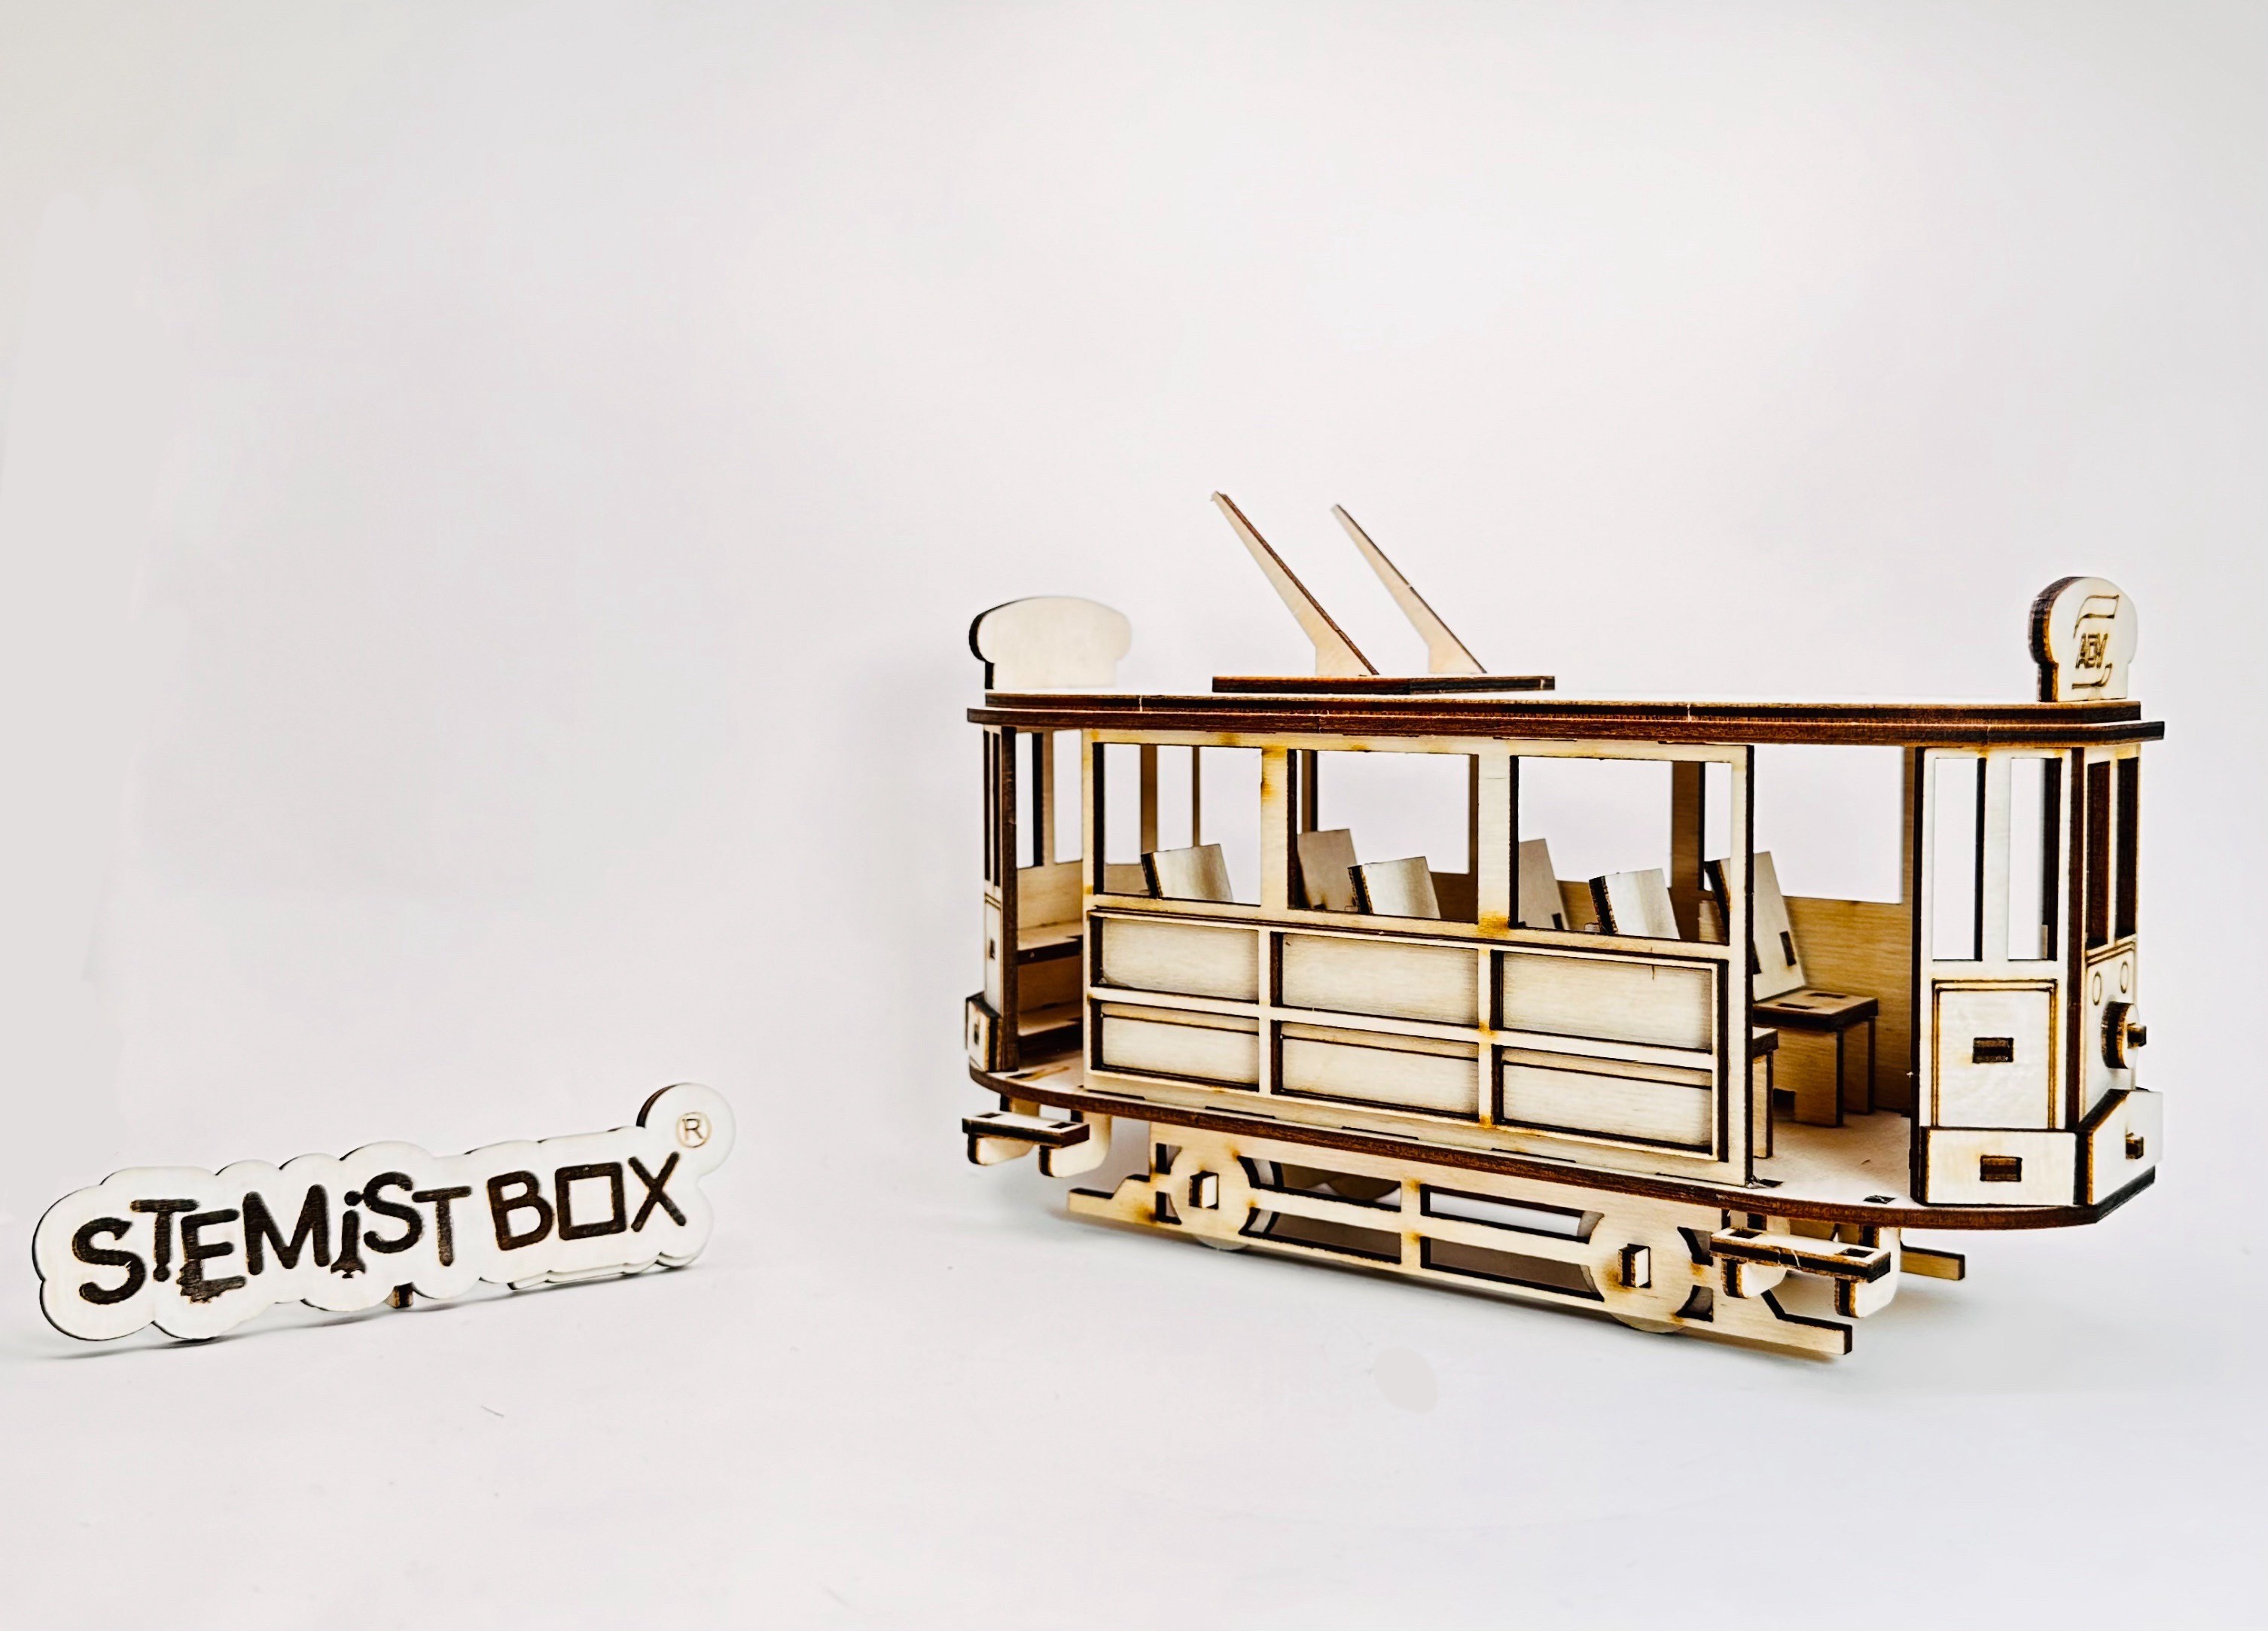 Nostaljik Tramvay DIY Model Kit